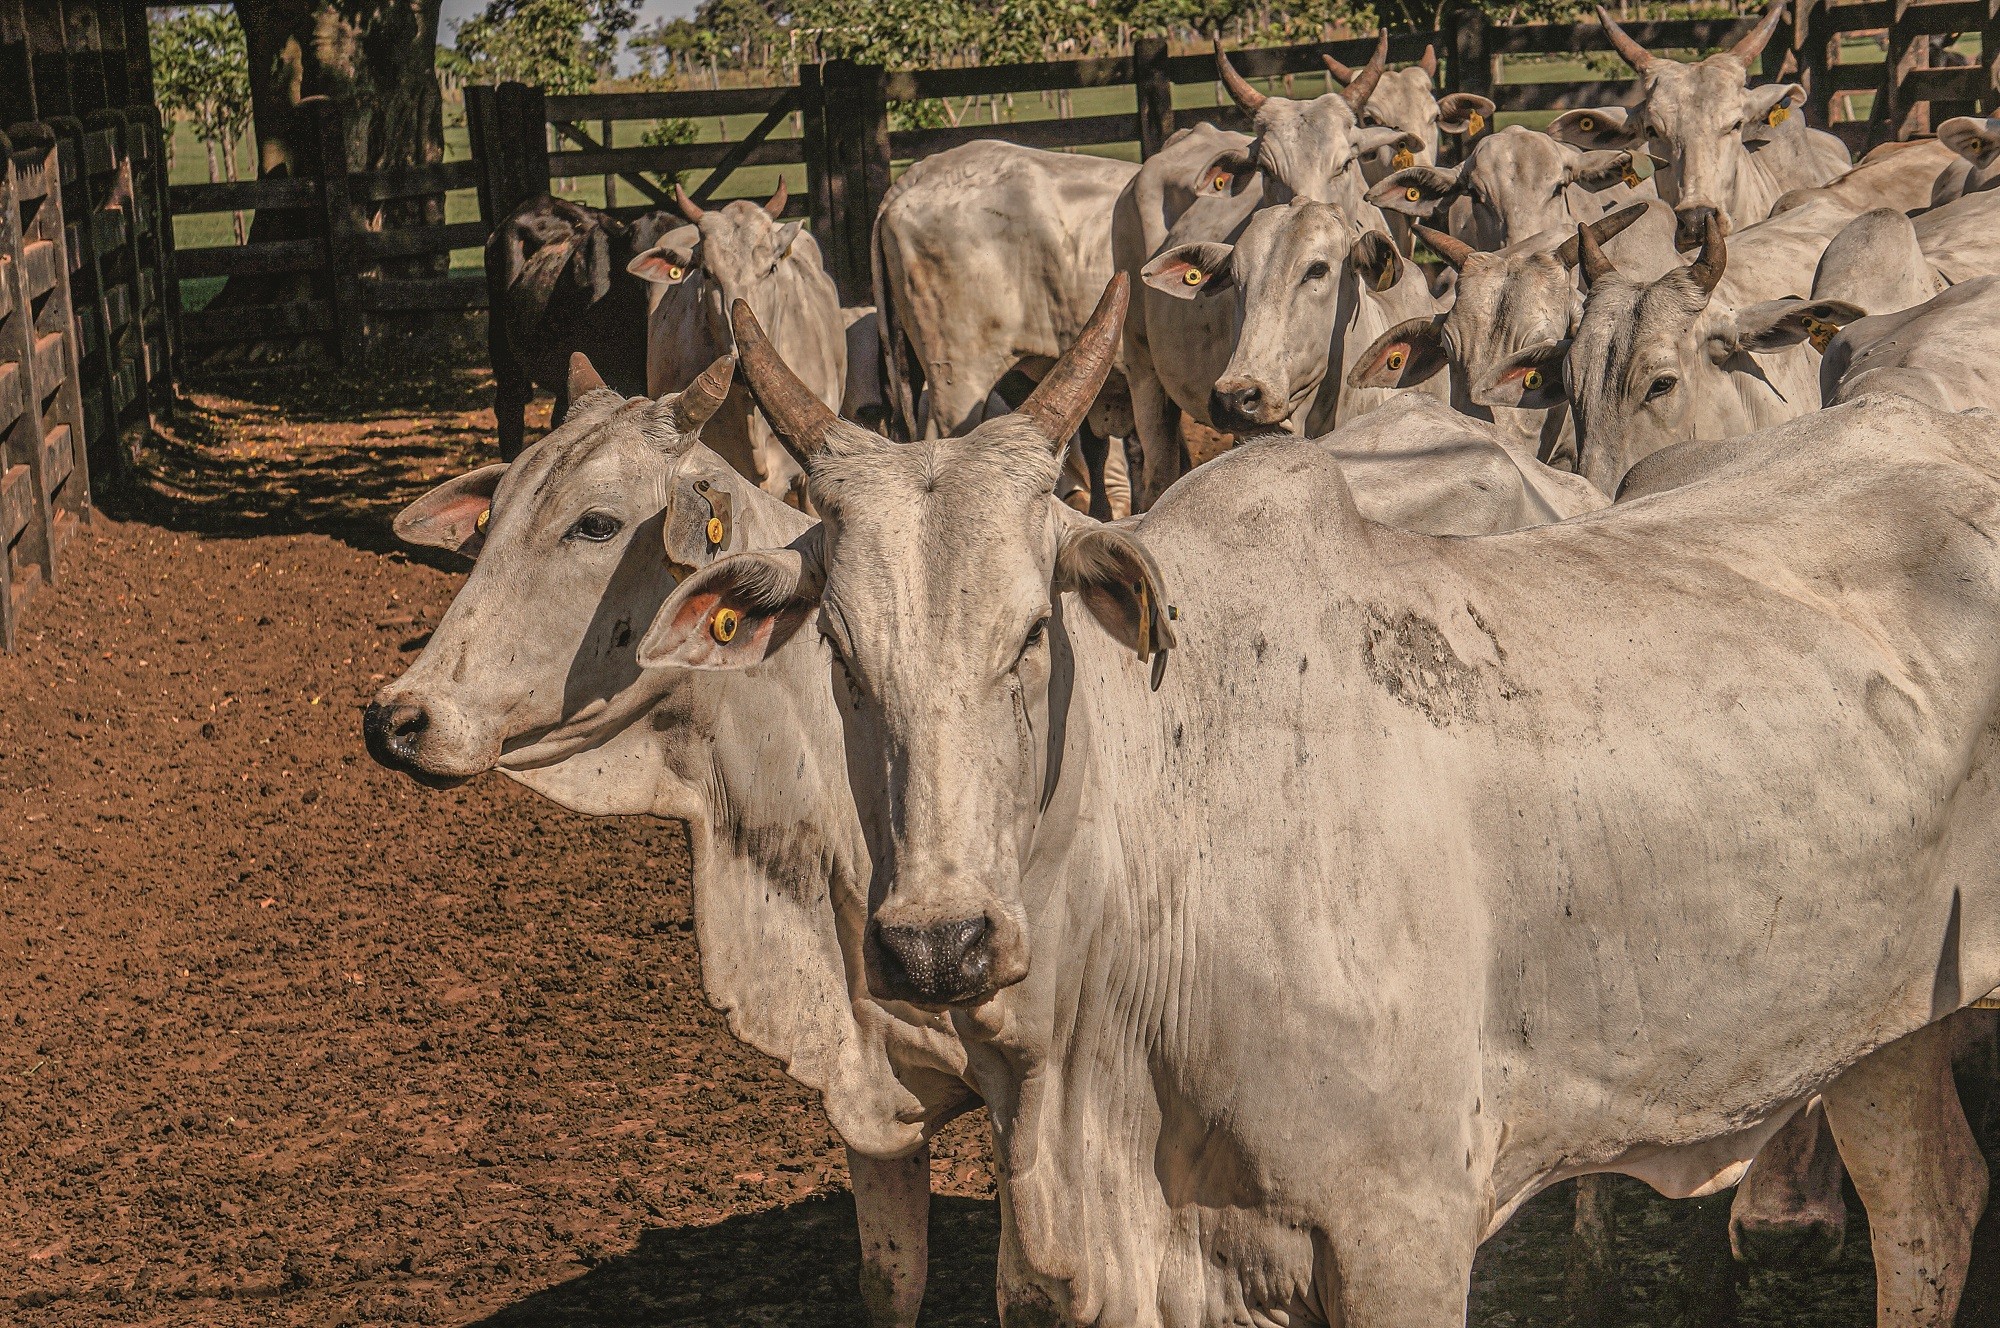 Tecnologia em formato de brinco permite acesso online às informações sobre os bovinos (Foto: GRUPO NC/AGROPECUÁRIA BURACÃO)